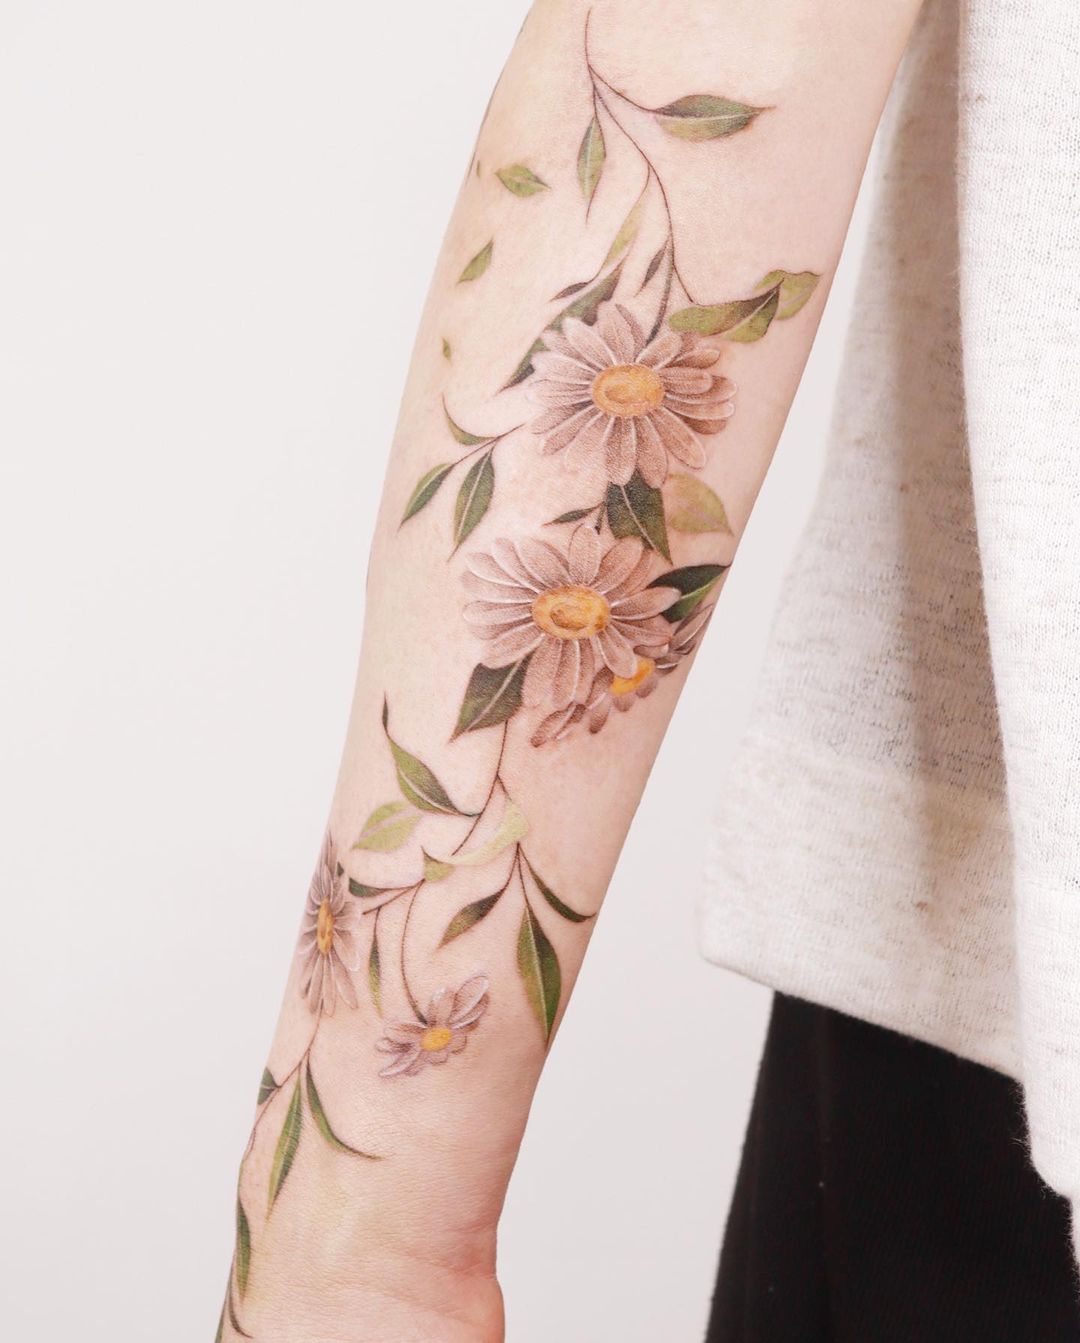 daisy on forearm tattoo by sozil tattoo